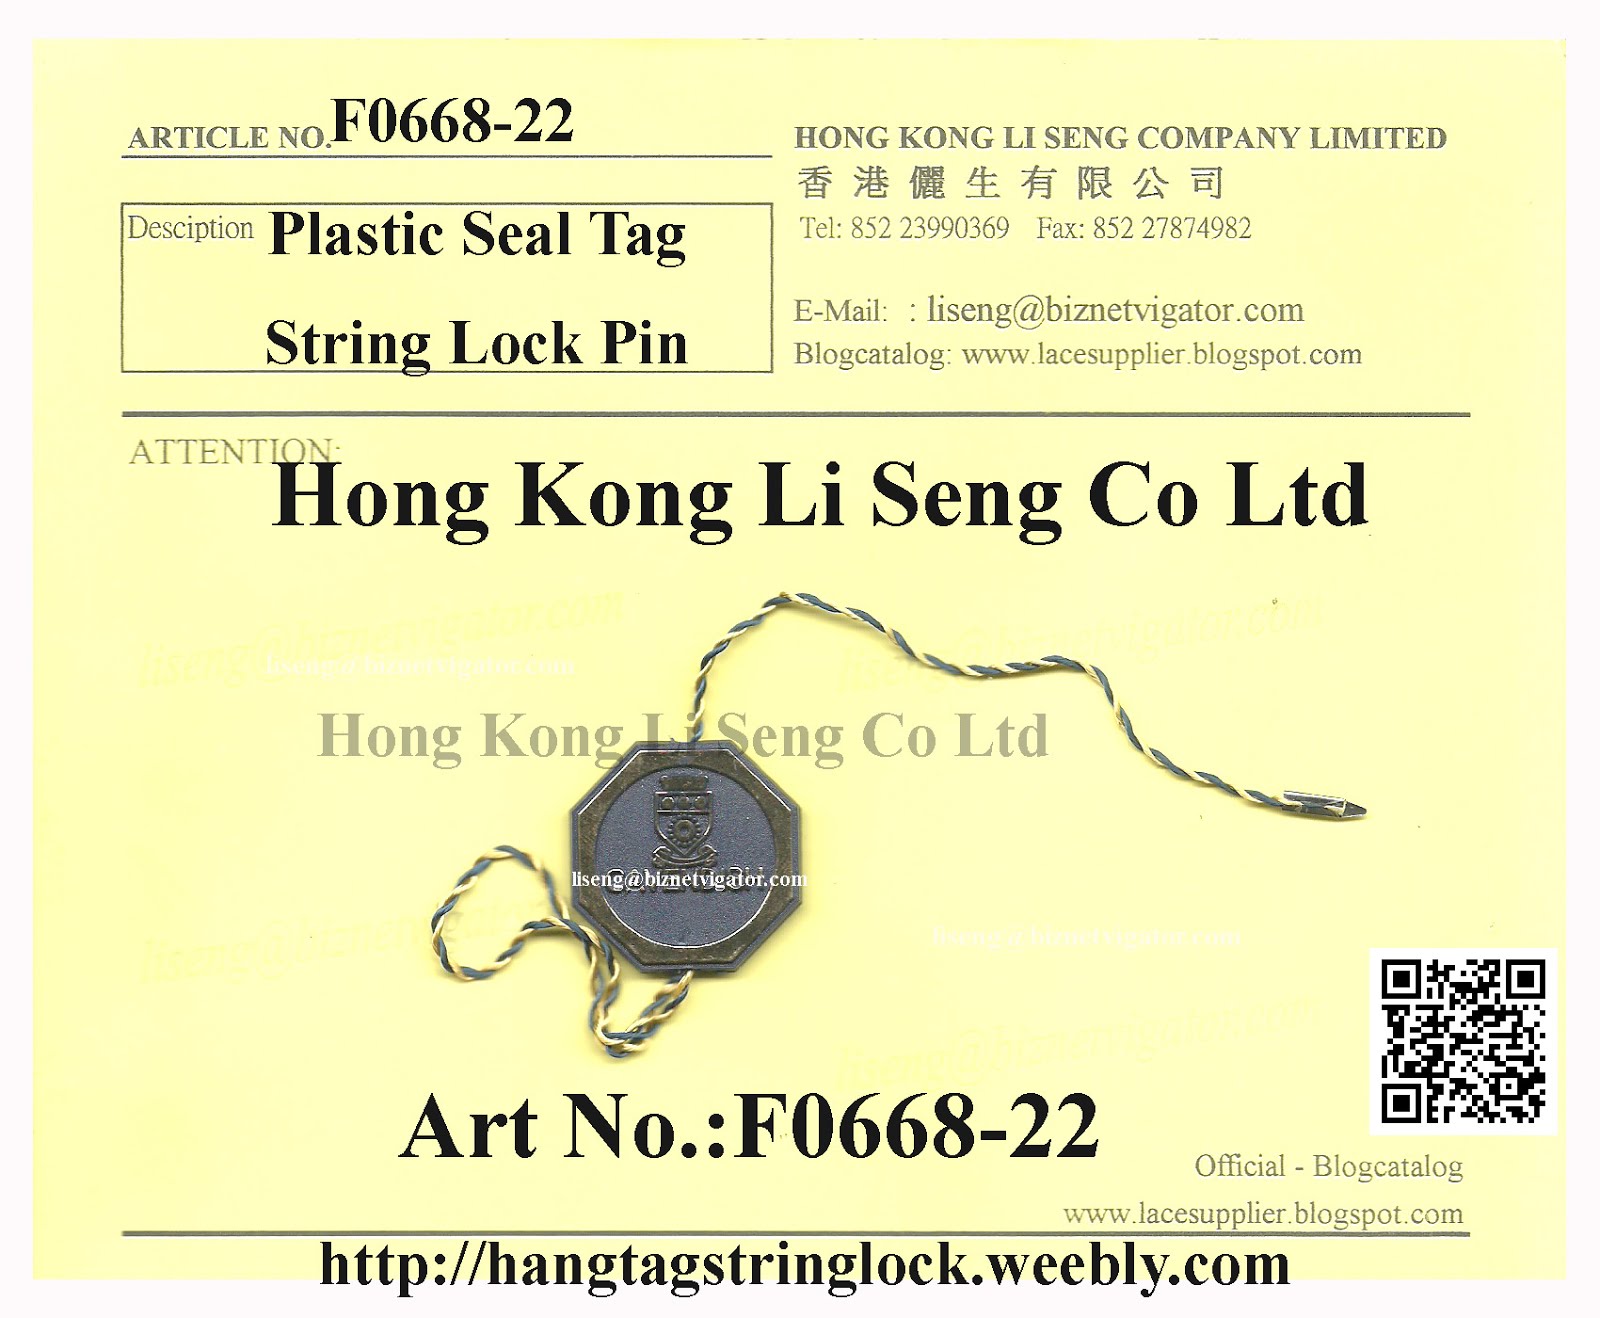 SPECIAL HEXAGONAL PLASTIC SEAL TAG METAL PIN